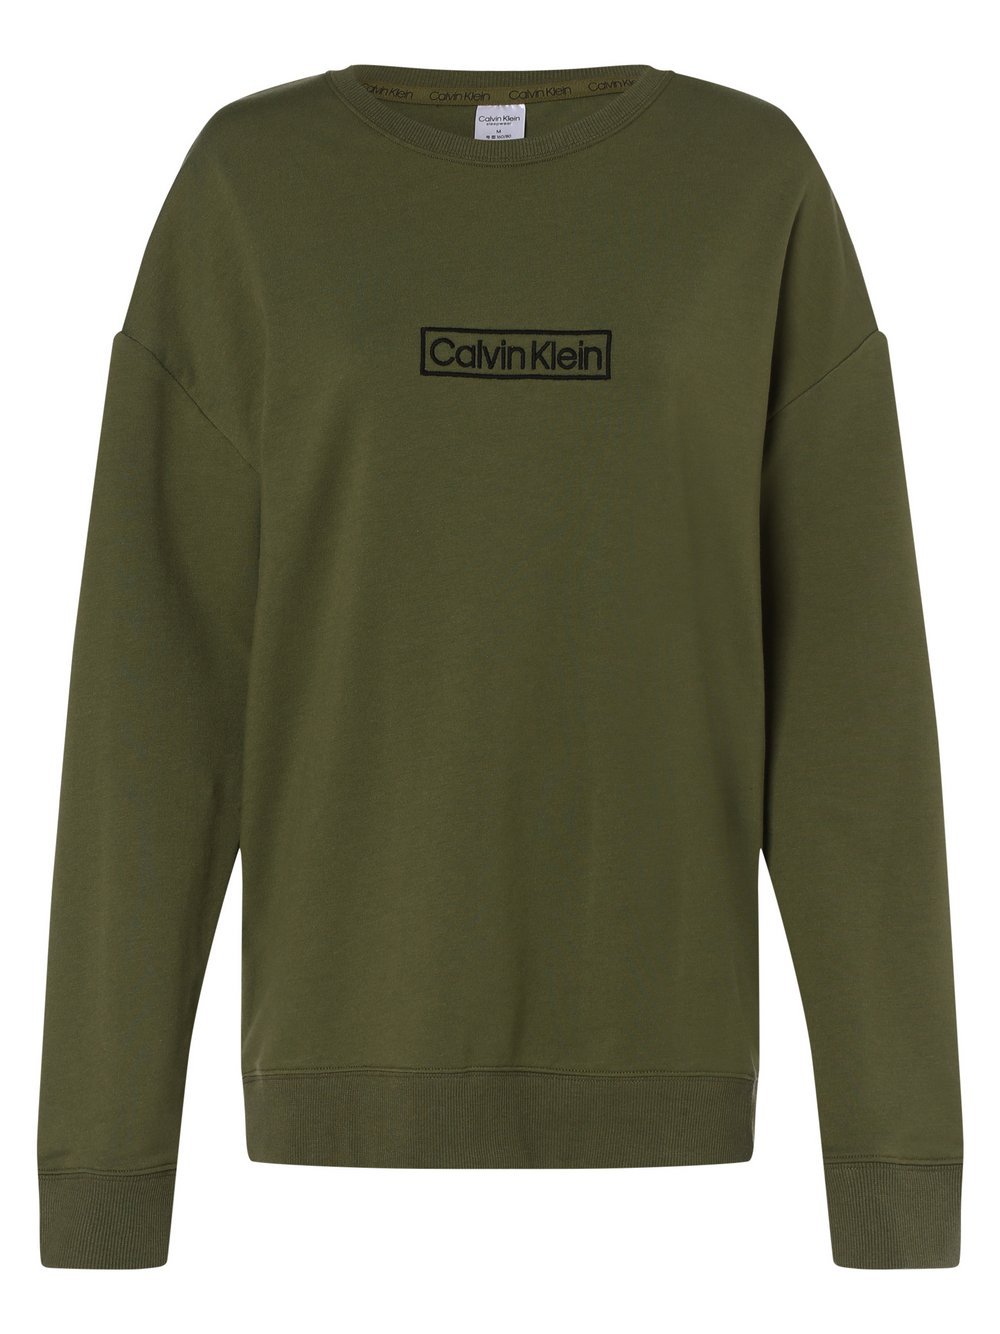 Calvin Klein - Damska bluza nierozpinana, zielony